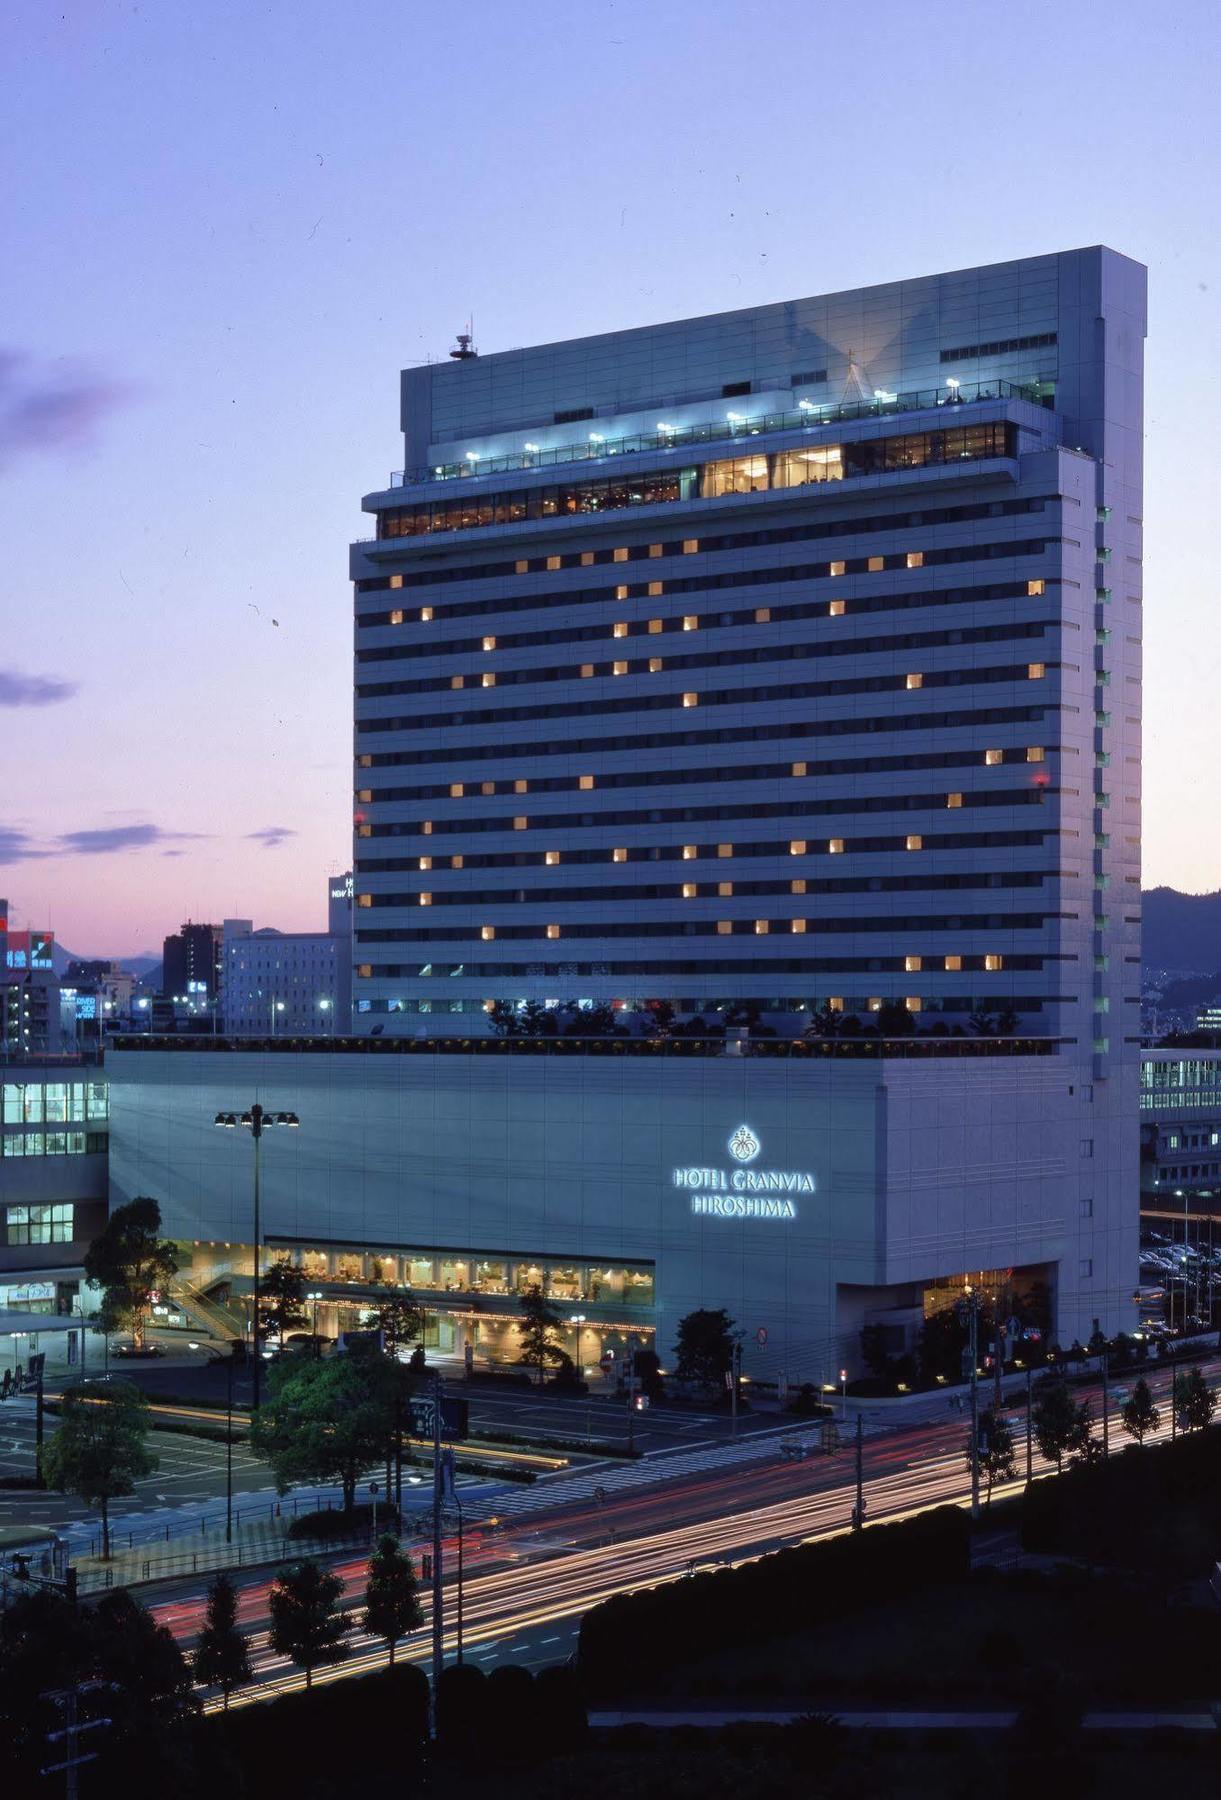 Hotel Granvia Hiroshima Bagian luar foto